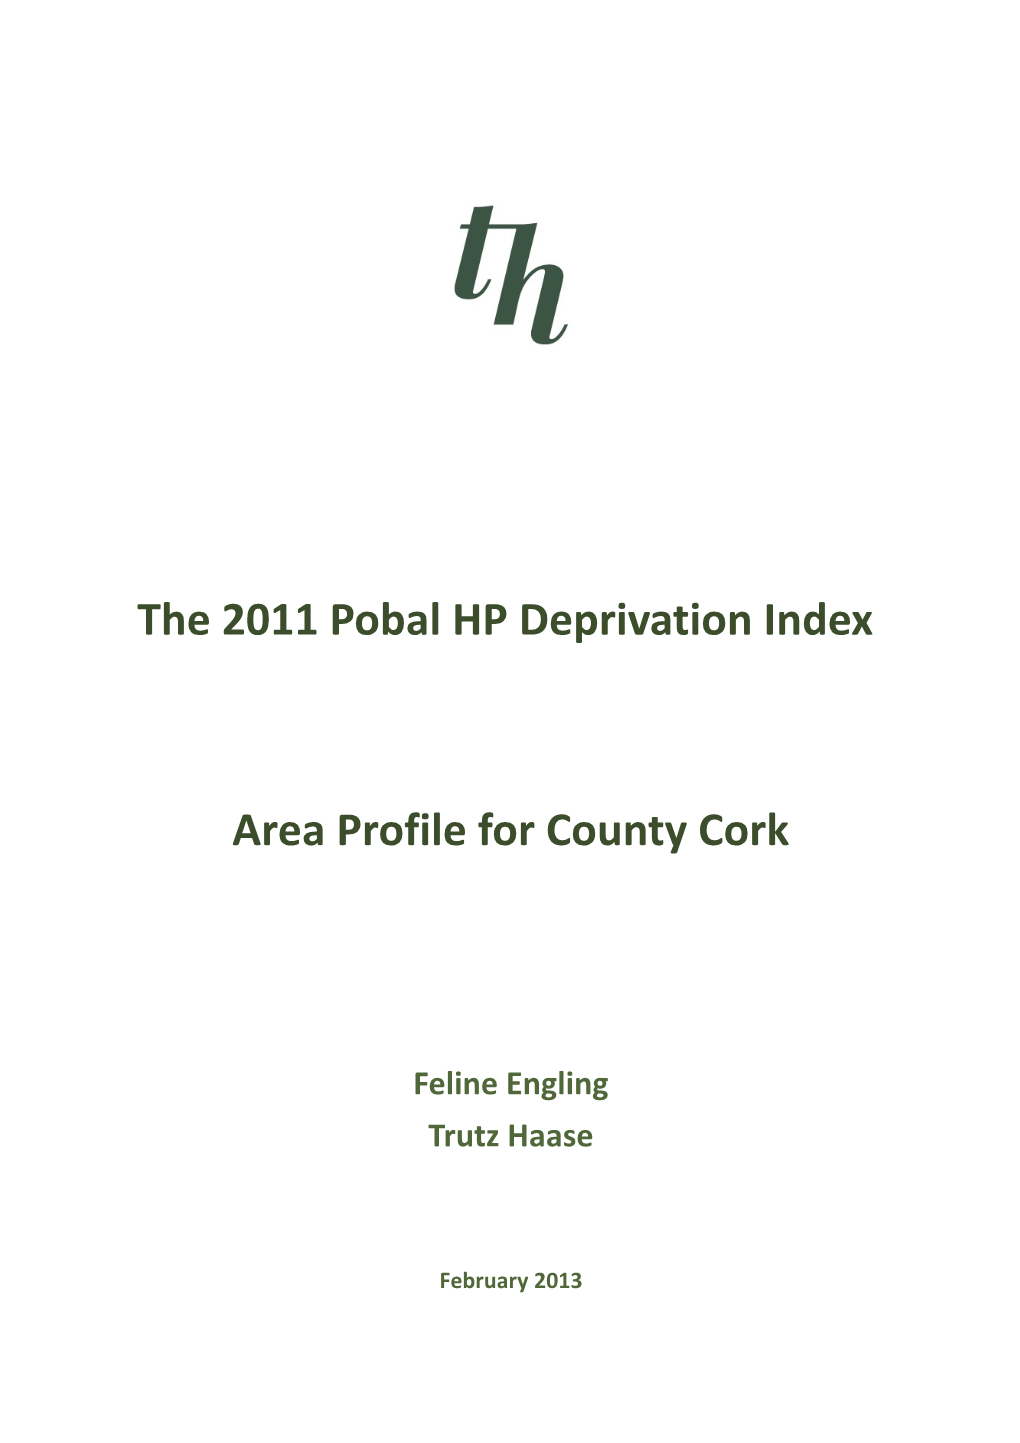 Area Profile for County Cork